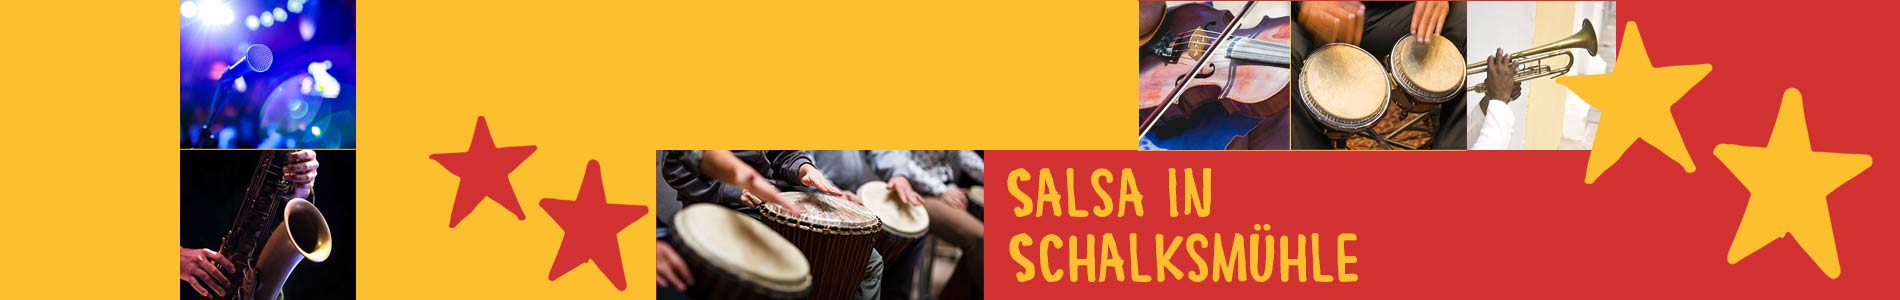 Salsa in Schalksmühle – Salsa lernen und tanzen, Tanzkurse, Partys, Veranstaltungen